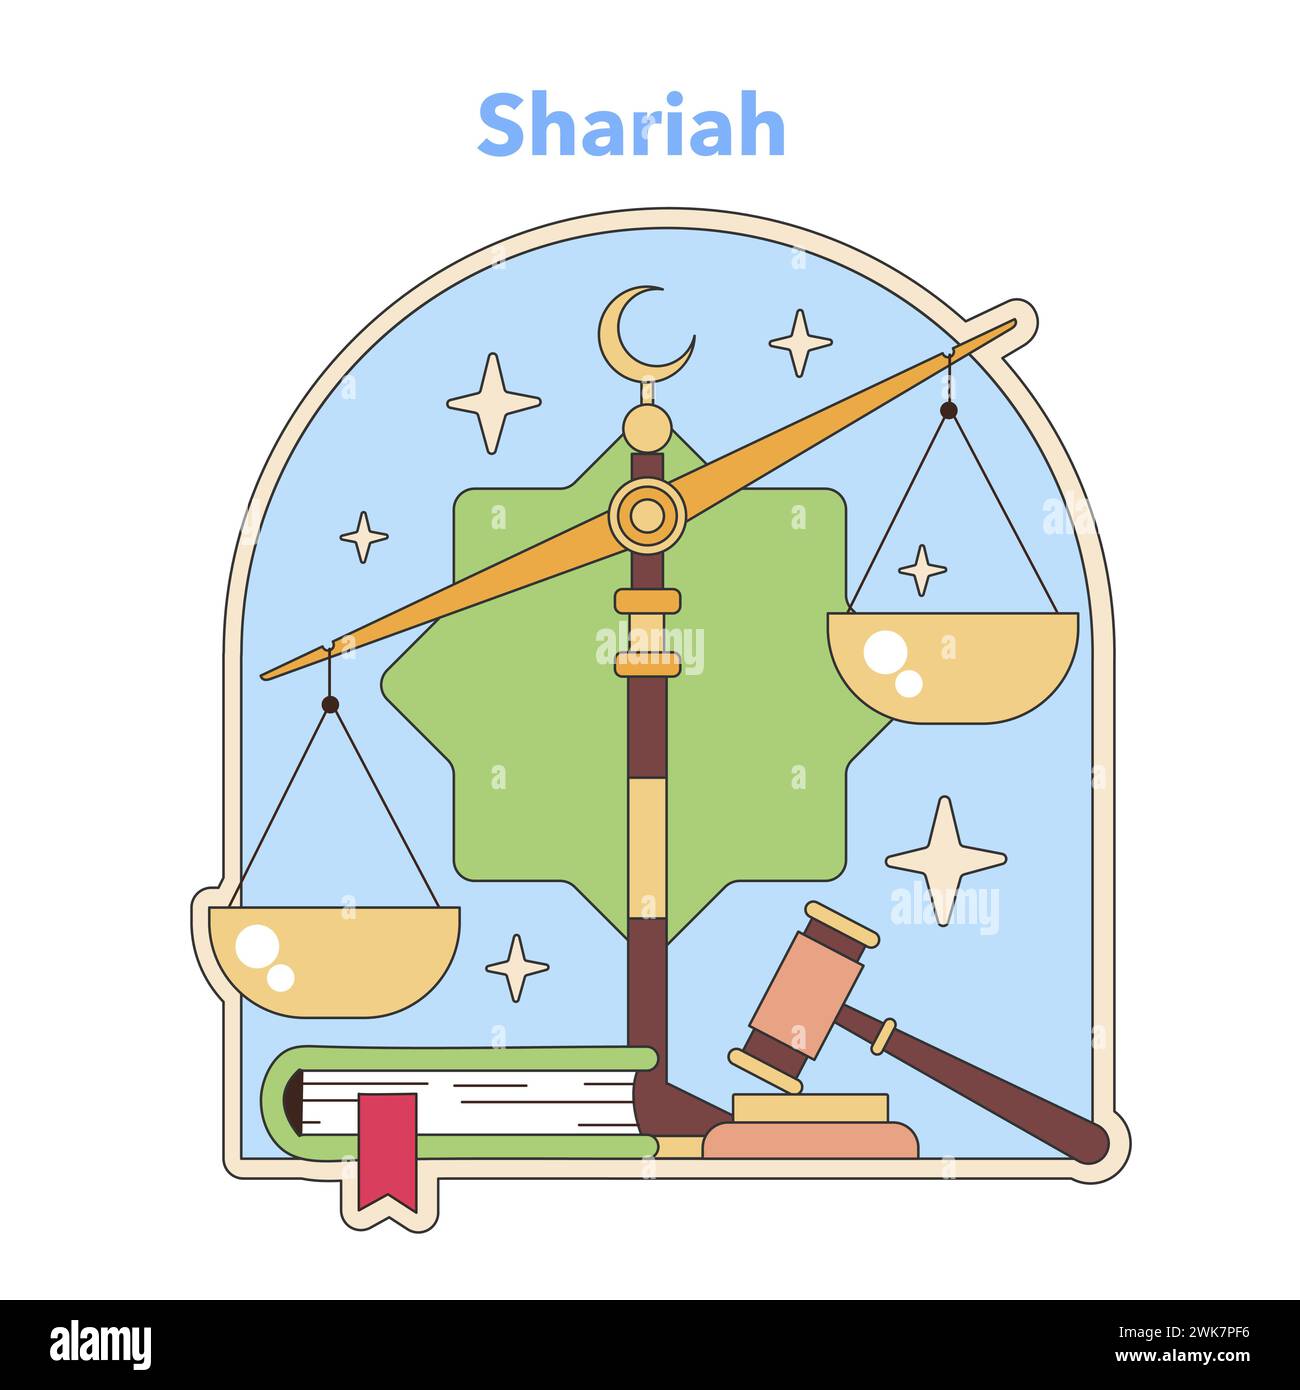 Shariah Law Konzept mit Maßstäben der Gerechtigkeit unter einem Halbmond. Symbolisiert islamische Rechtswissenschaften und Jurisprudenz. Illustration des flachen Vektors Stock Vektor